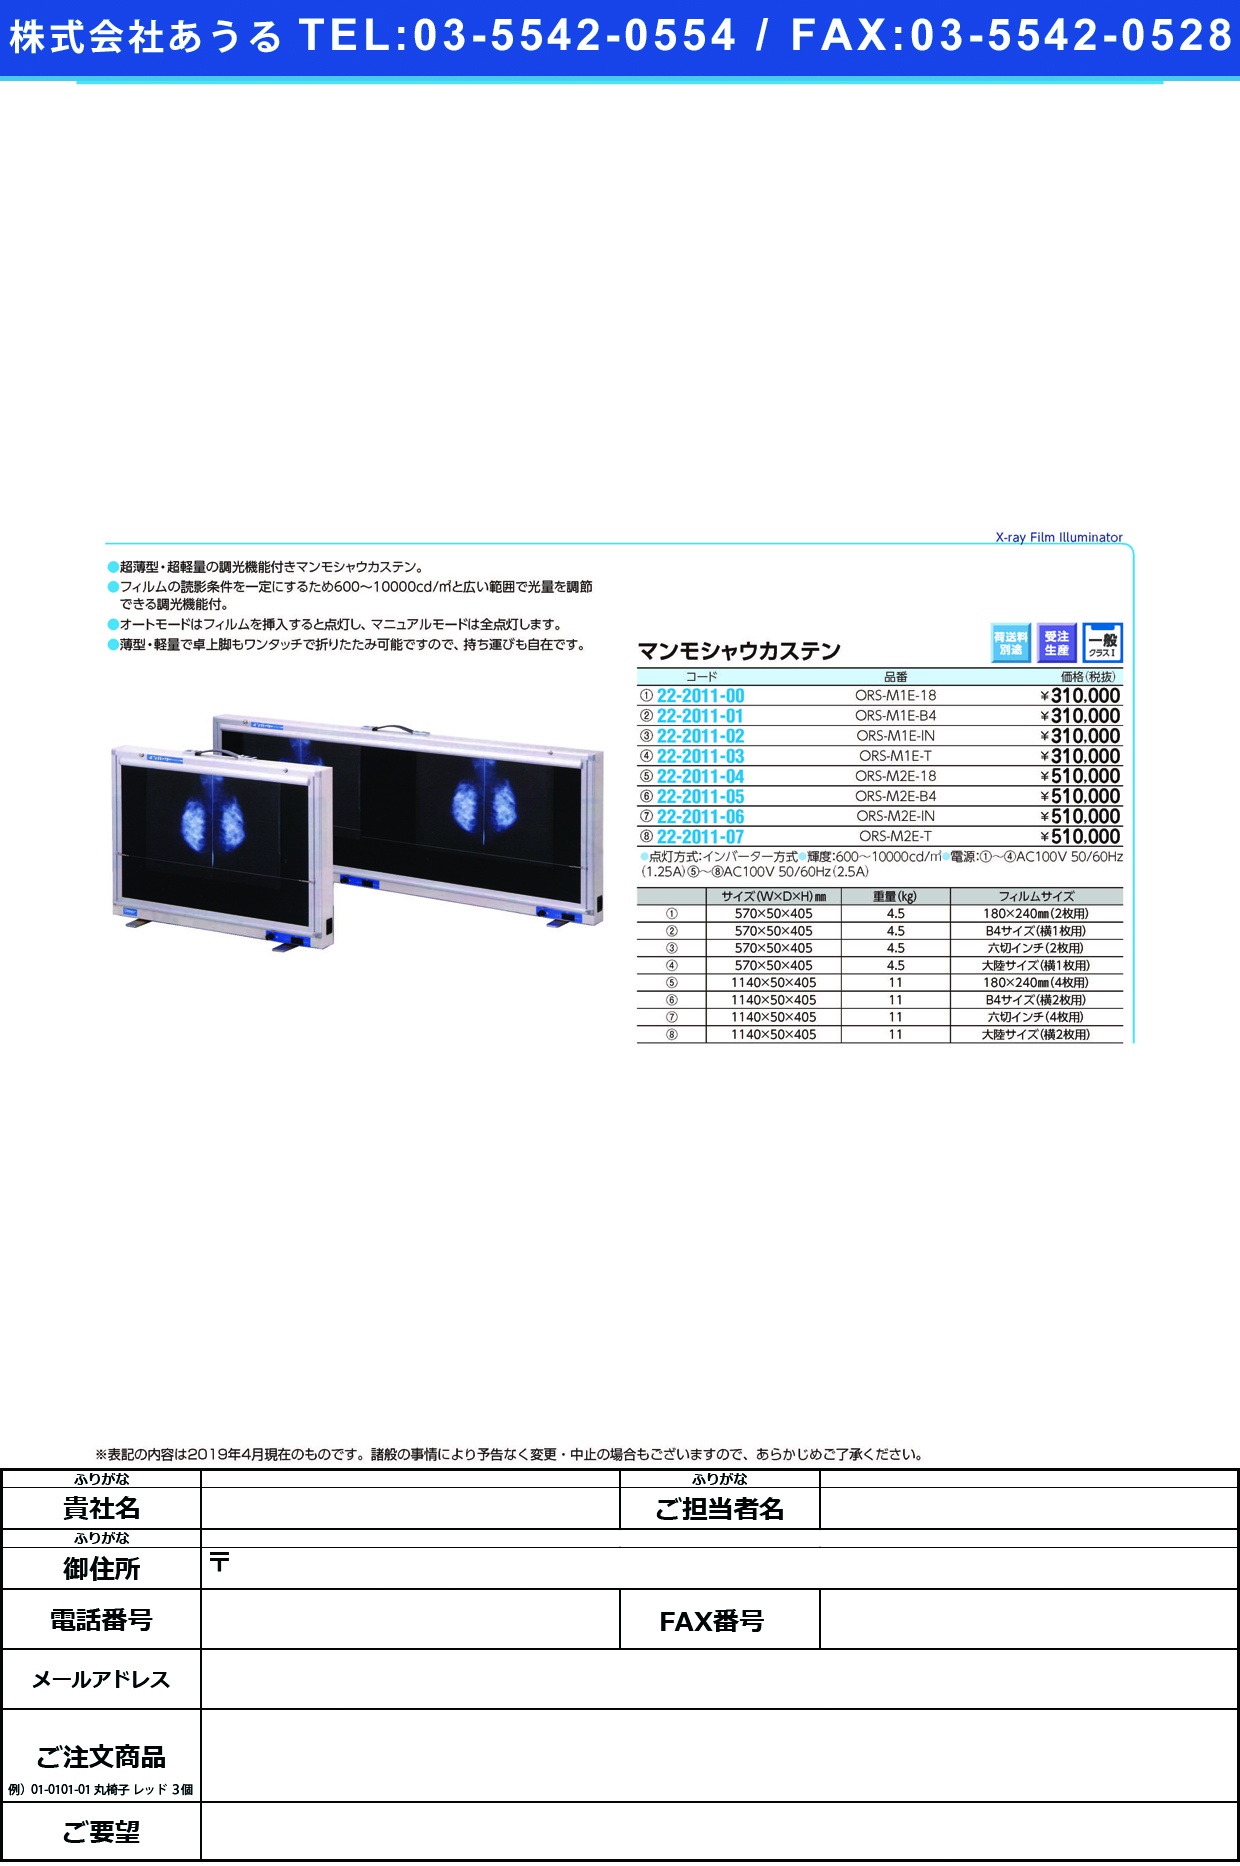 (22-2011-07)マンモシャウカステン（薄型） ORS-M2E-T ﾏﾝﾓｼｬｳｶｽﾃﾝ(ｳｽｶﾞﾀ)【1台単位】【2019年カタログ商品】